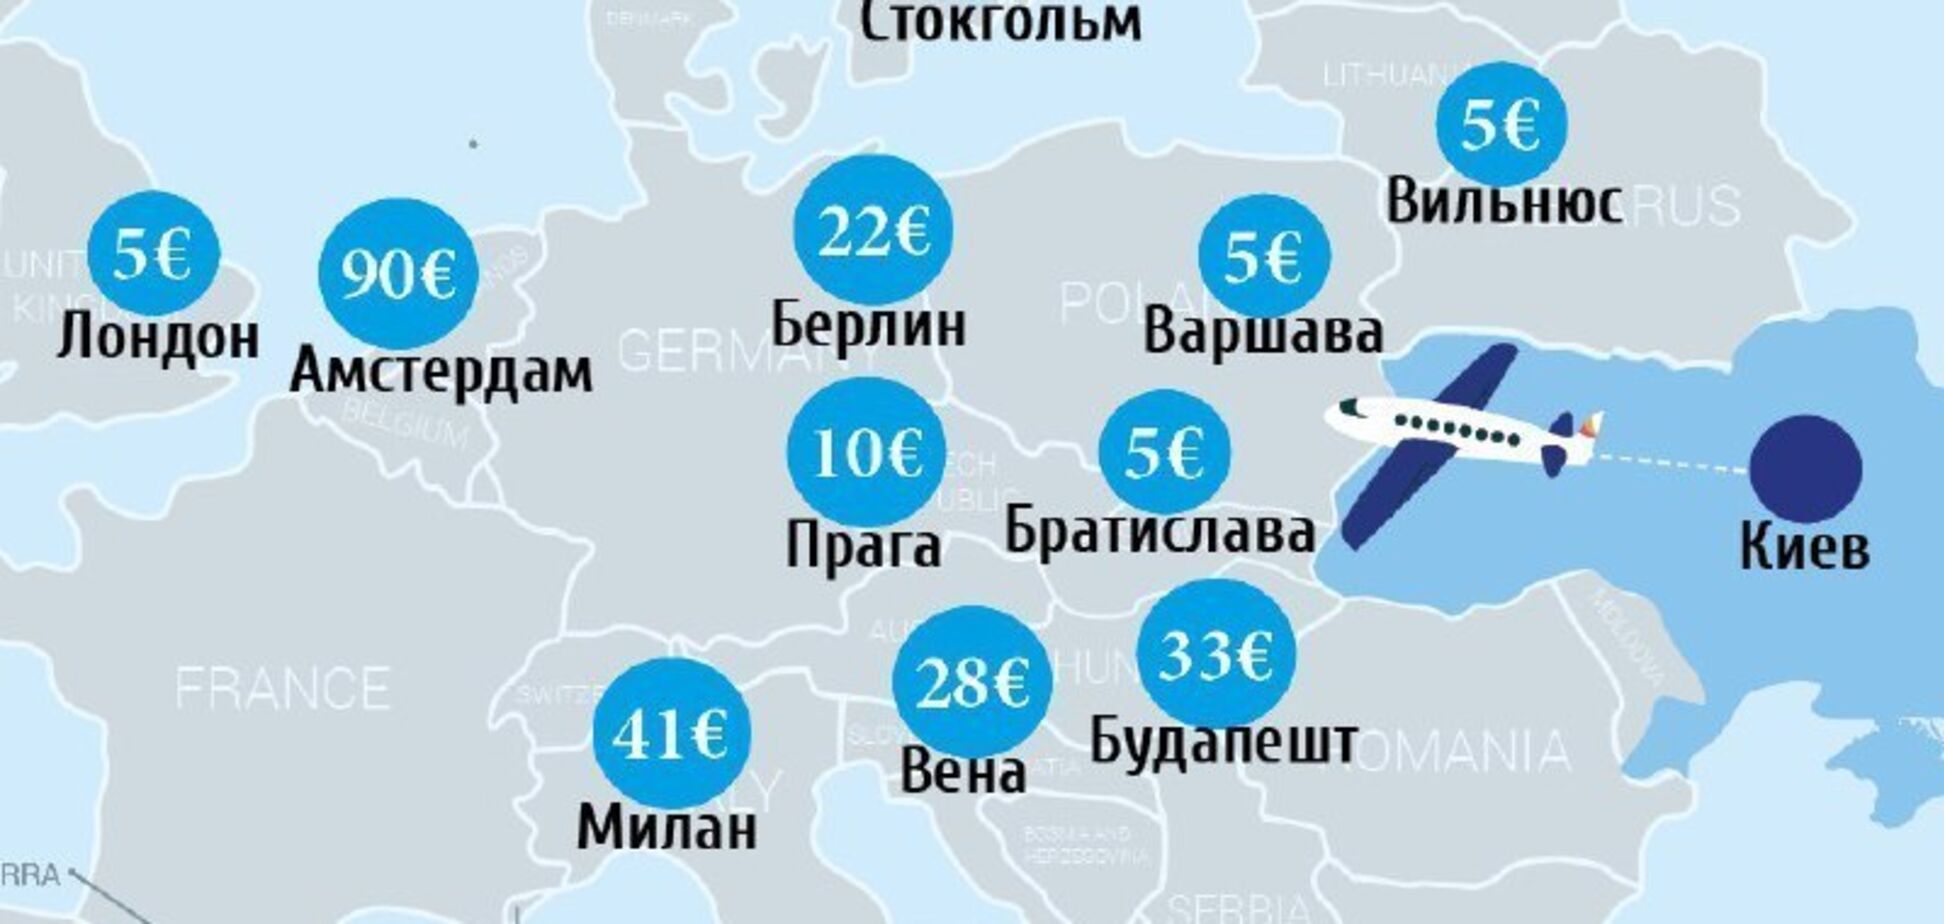 В ЕС за 5 евро: что предлагают украинцам лоукостеры 